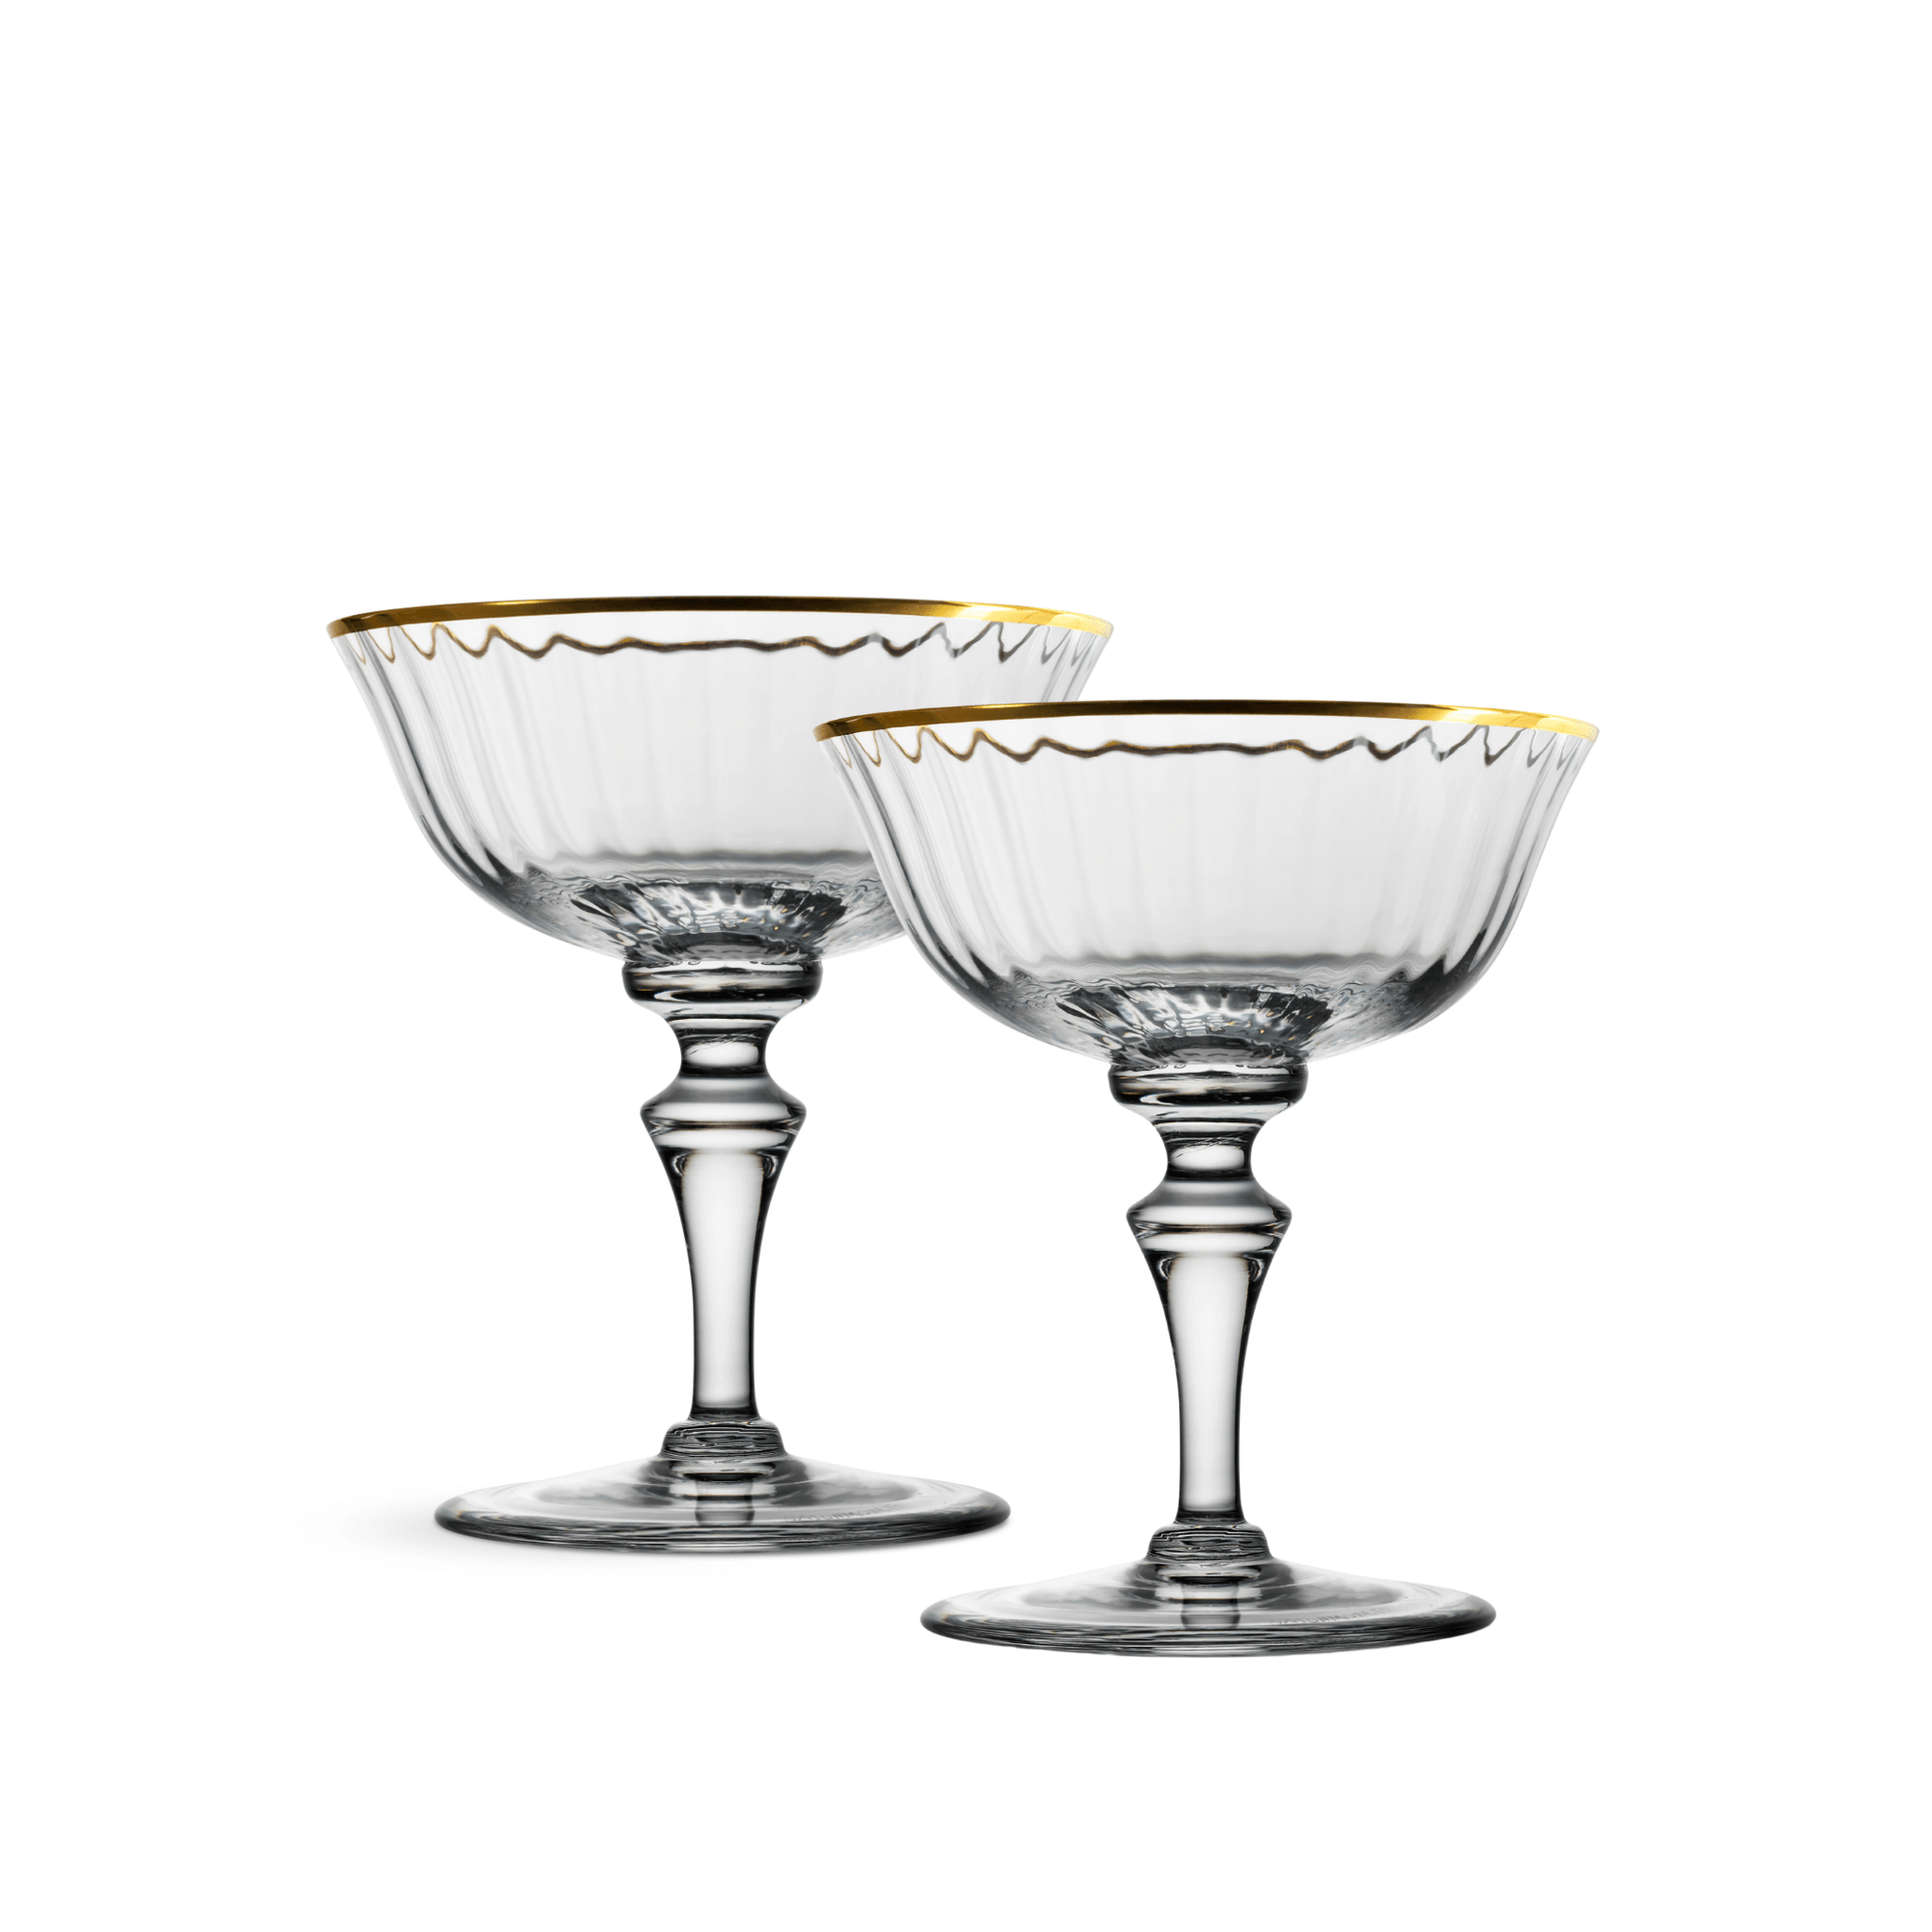 Nason Moretti 2/78 Murano Champagne Coupe Glass Gold Rim